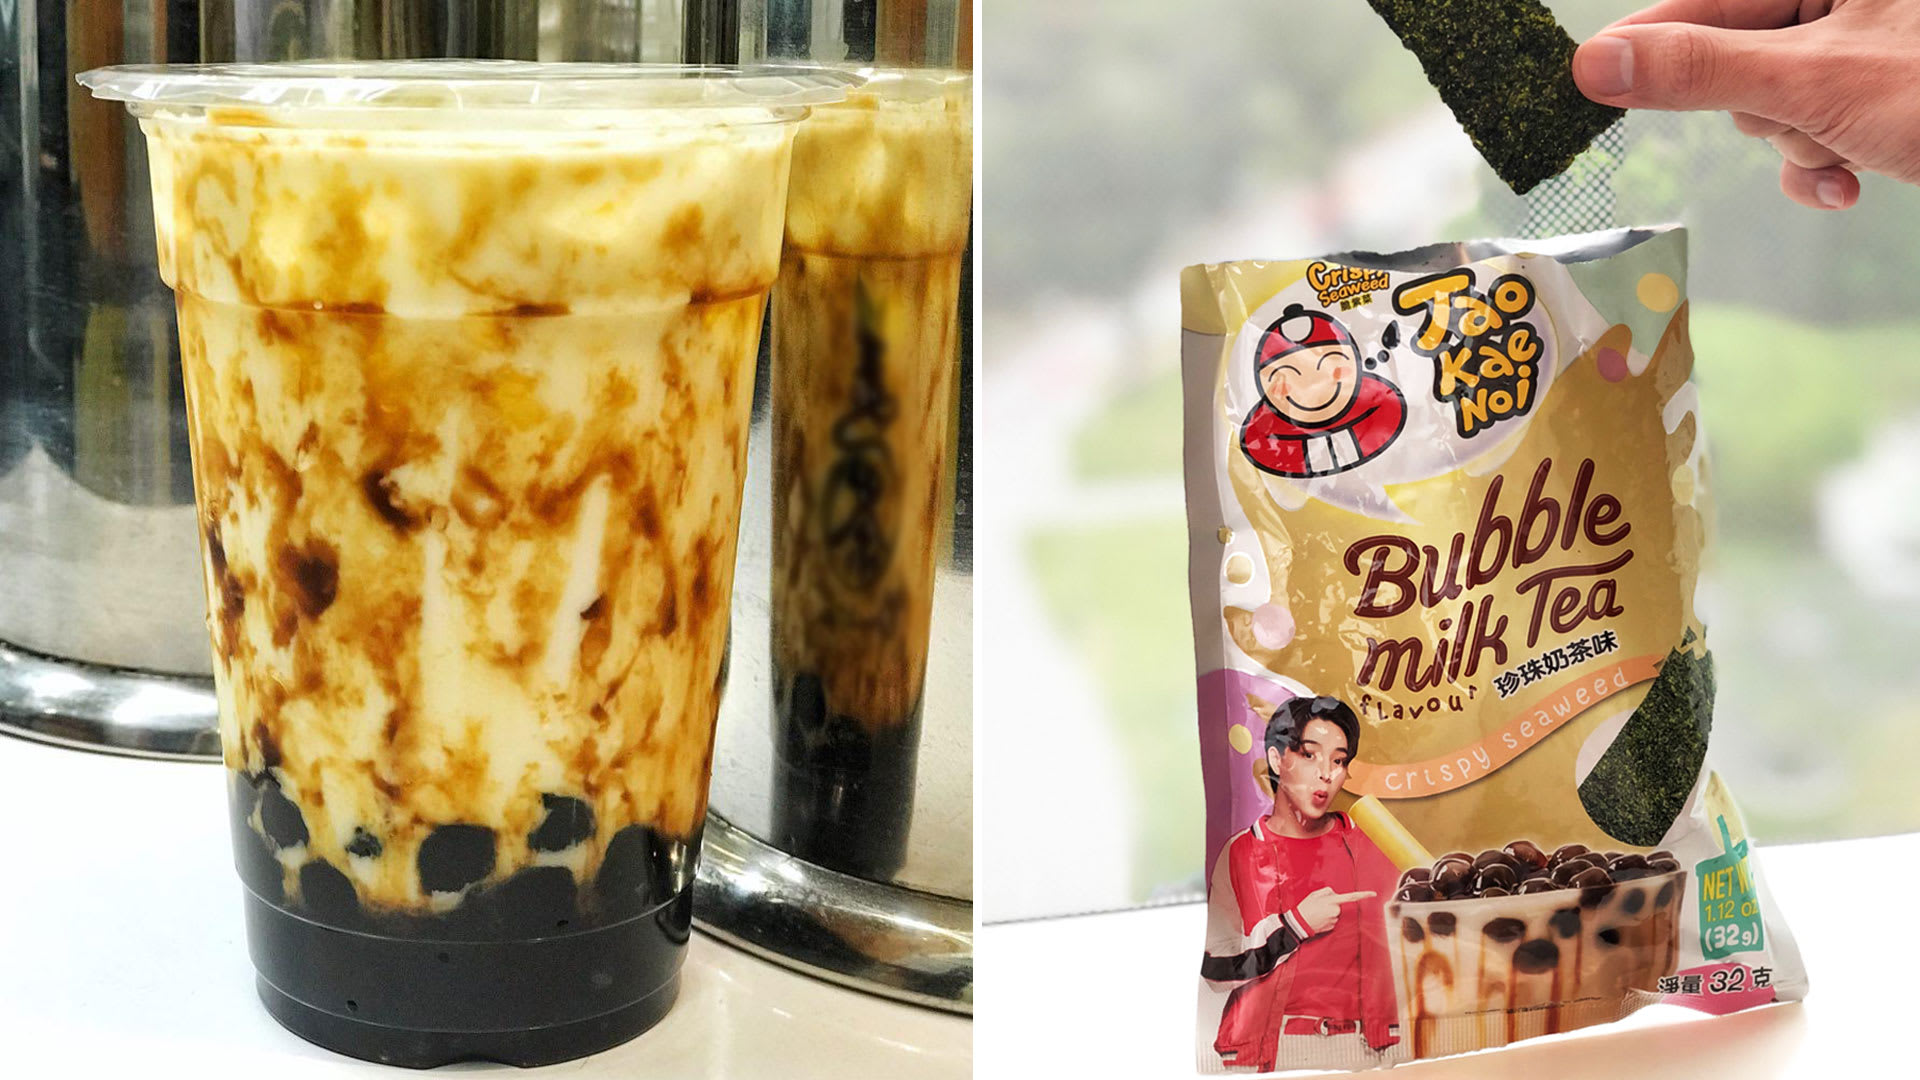 Tao Kae Noi’s Bubble Milk Tea Crispy Seaweed Taste Test: Nice Or Not?